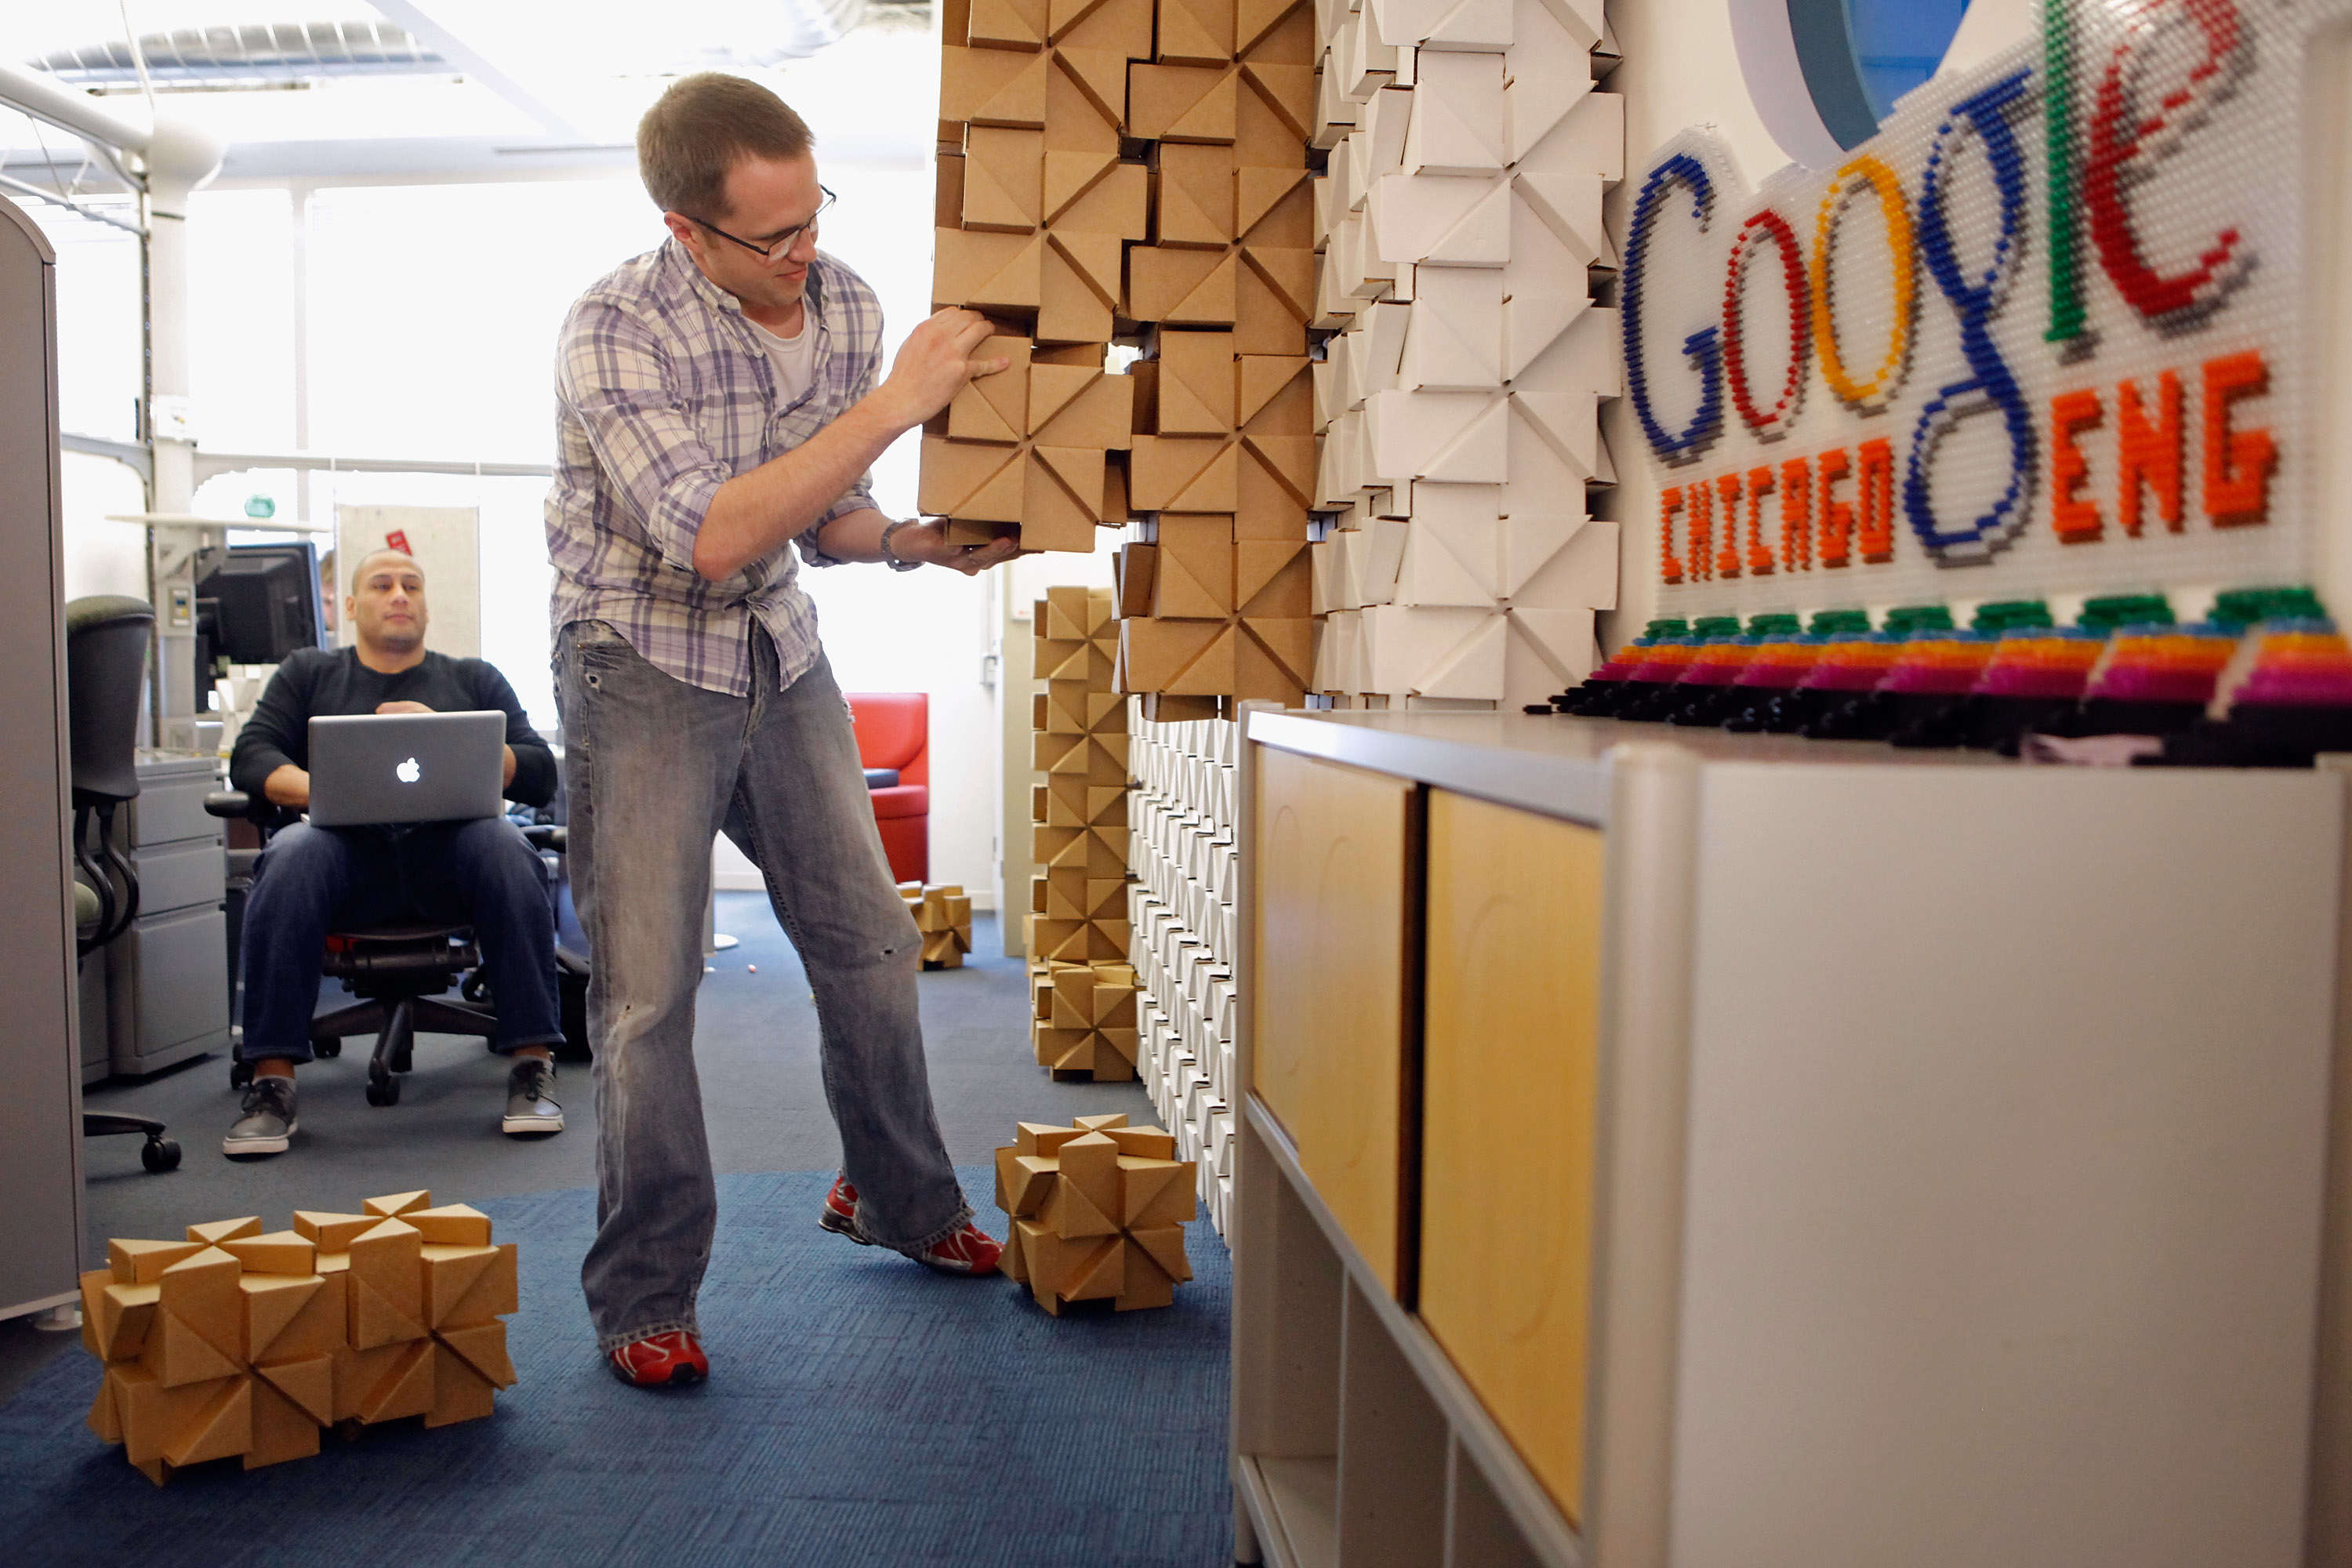 Офис гугл. Офисы гугл в мире. Праздник в офисе гугл. Стена собираемая в гугл офисе.